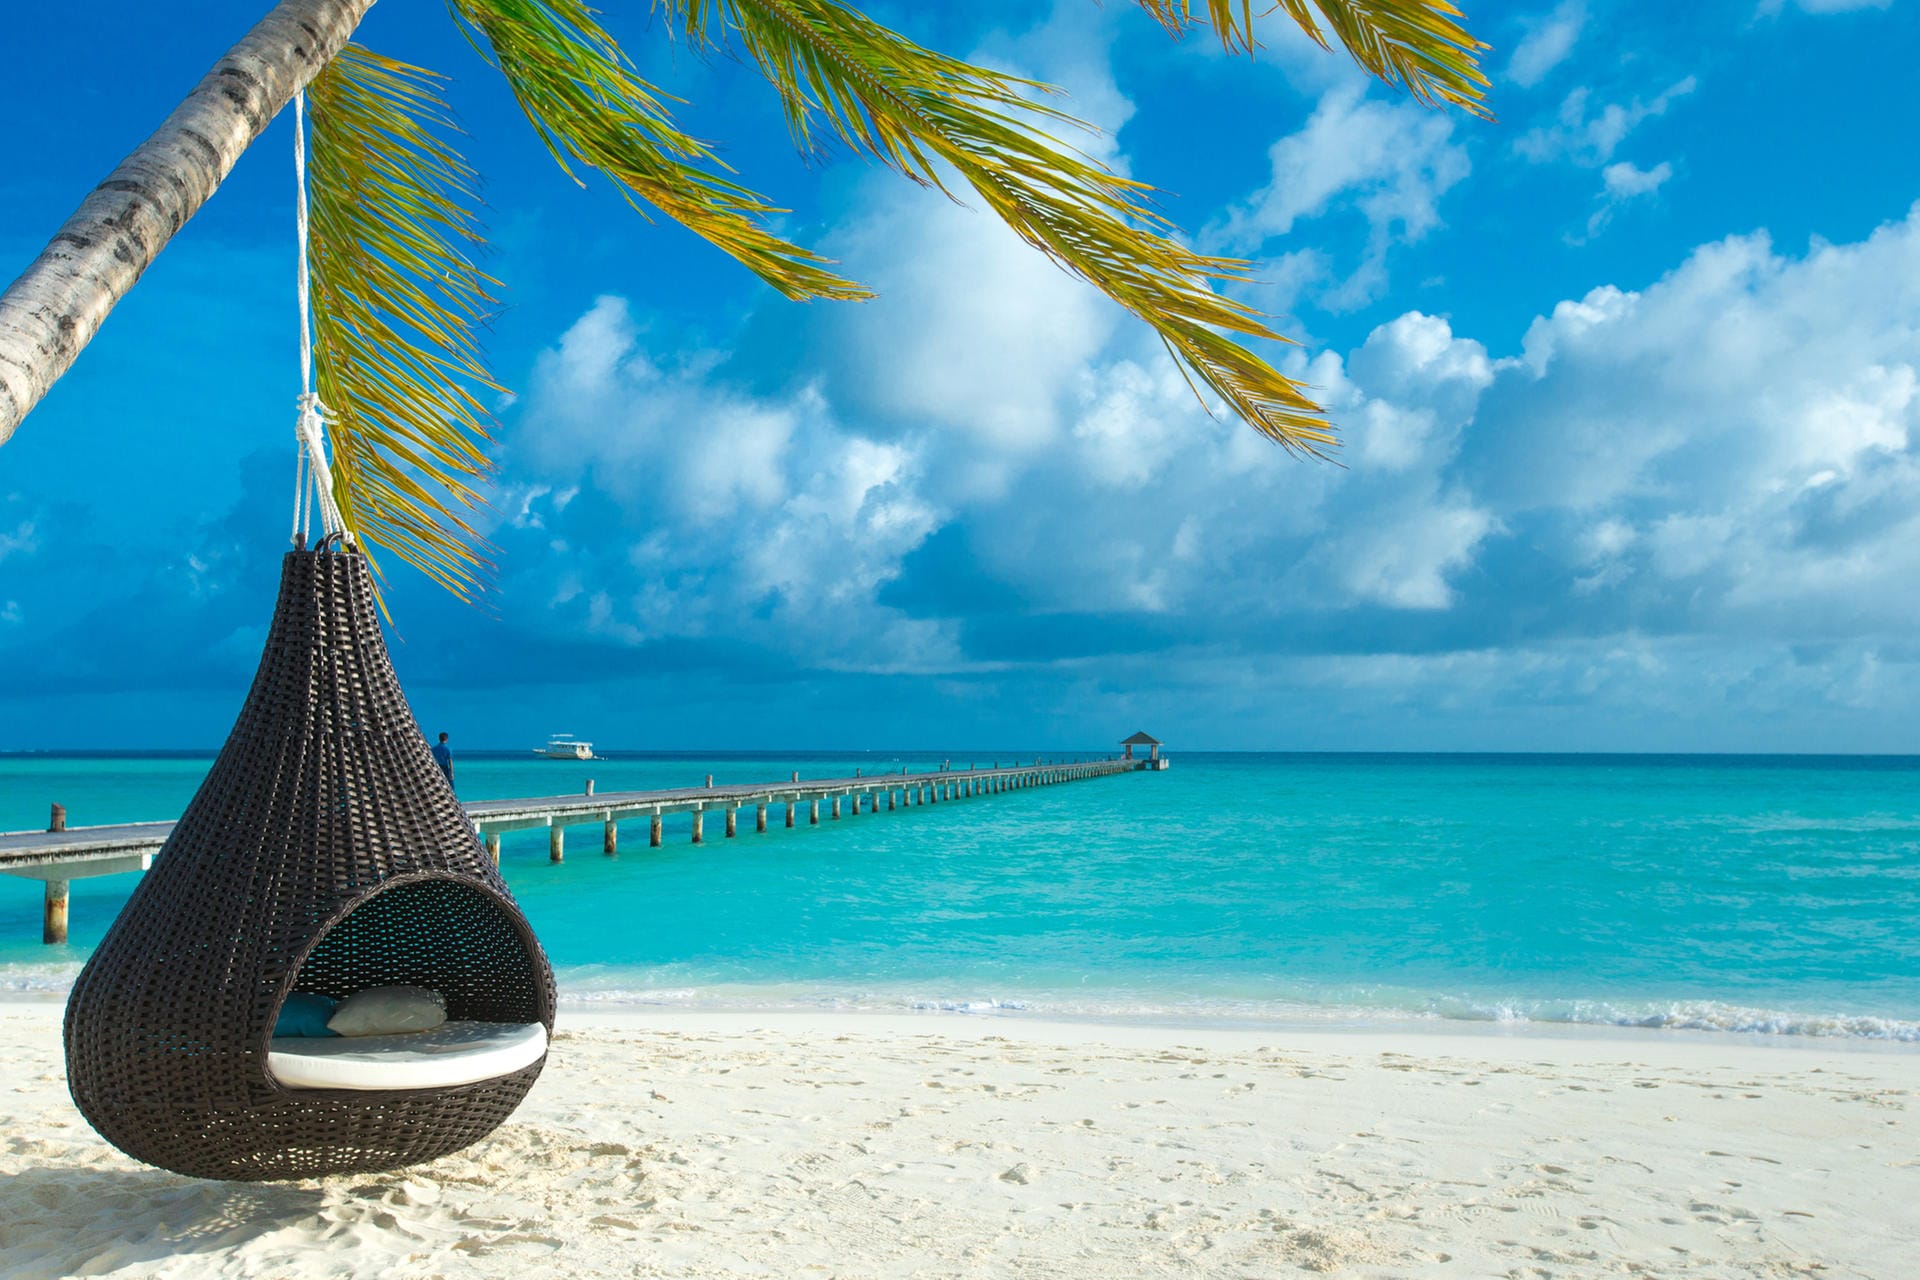 Abseits der Urlaubsresorts auf den Malediven sollten Touristen sich nicht freizügig zeigen – auch nicht am Strand.